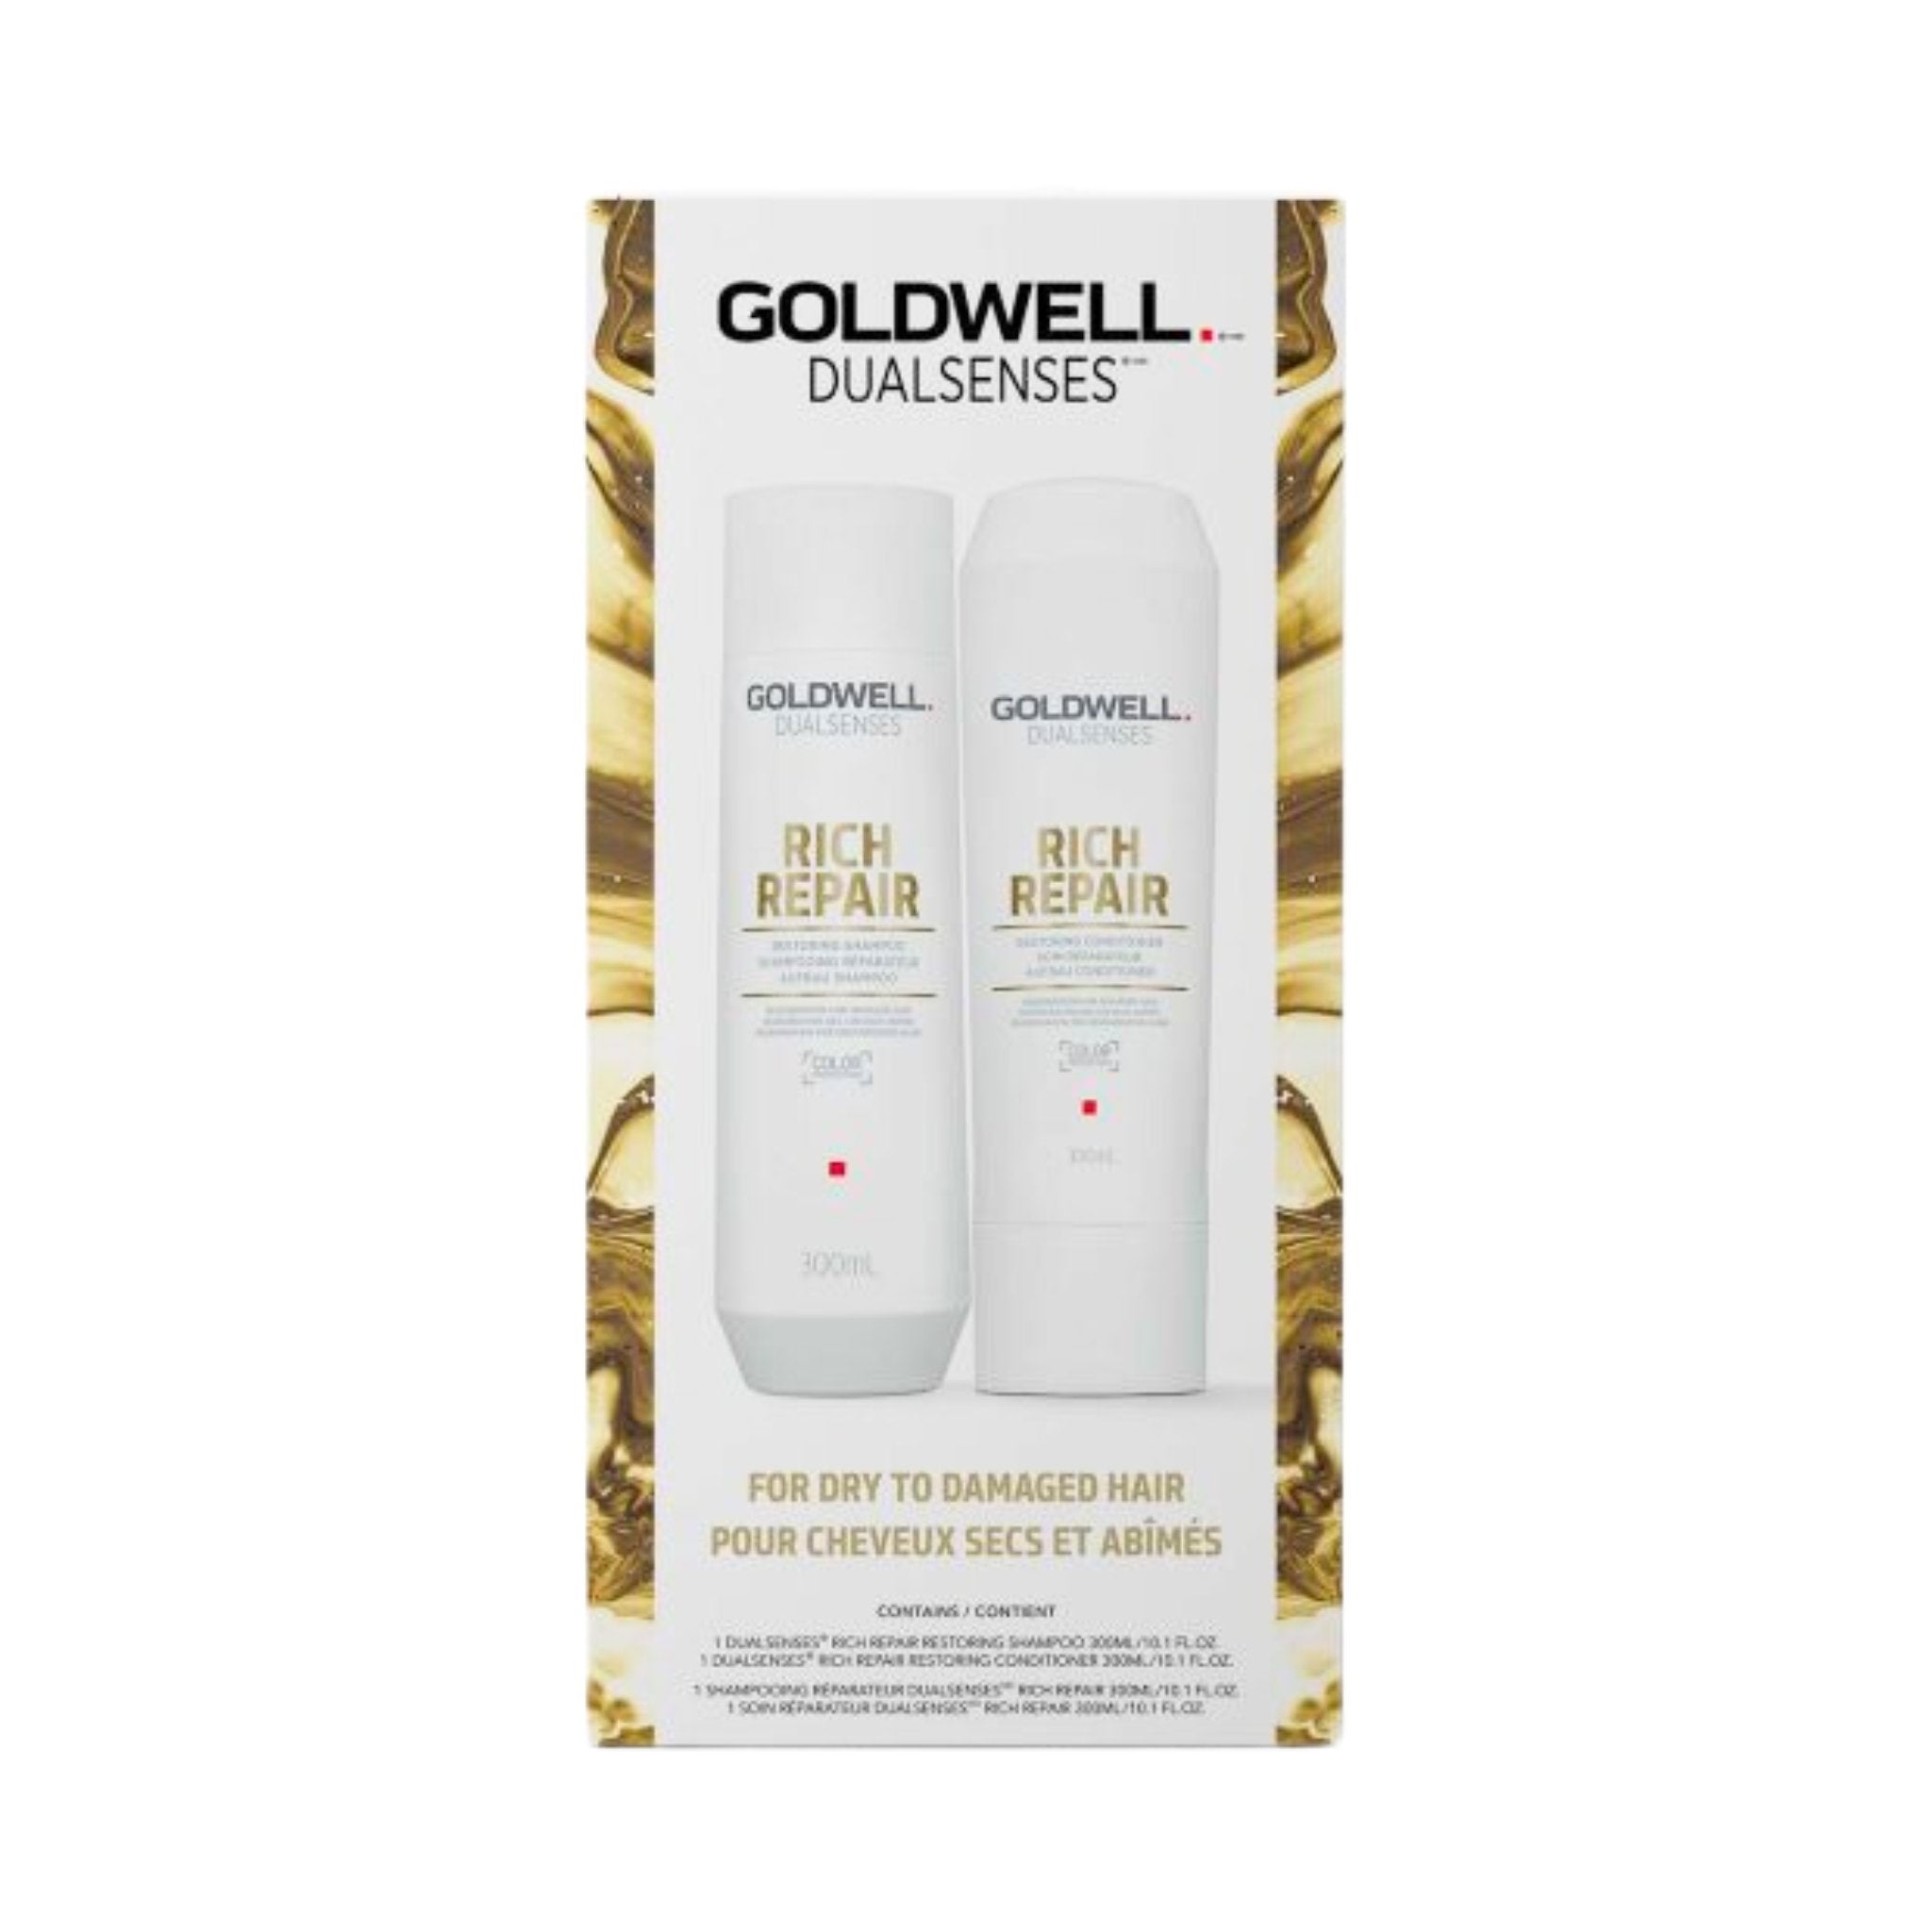 Goldwell. Duo Printanier Rich Repair - Concept C. Shop